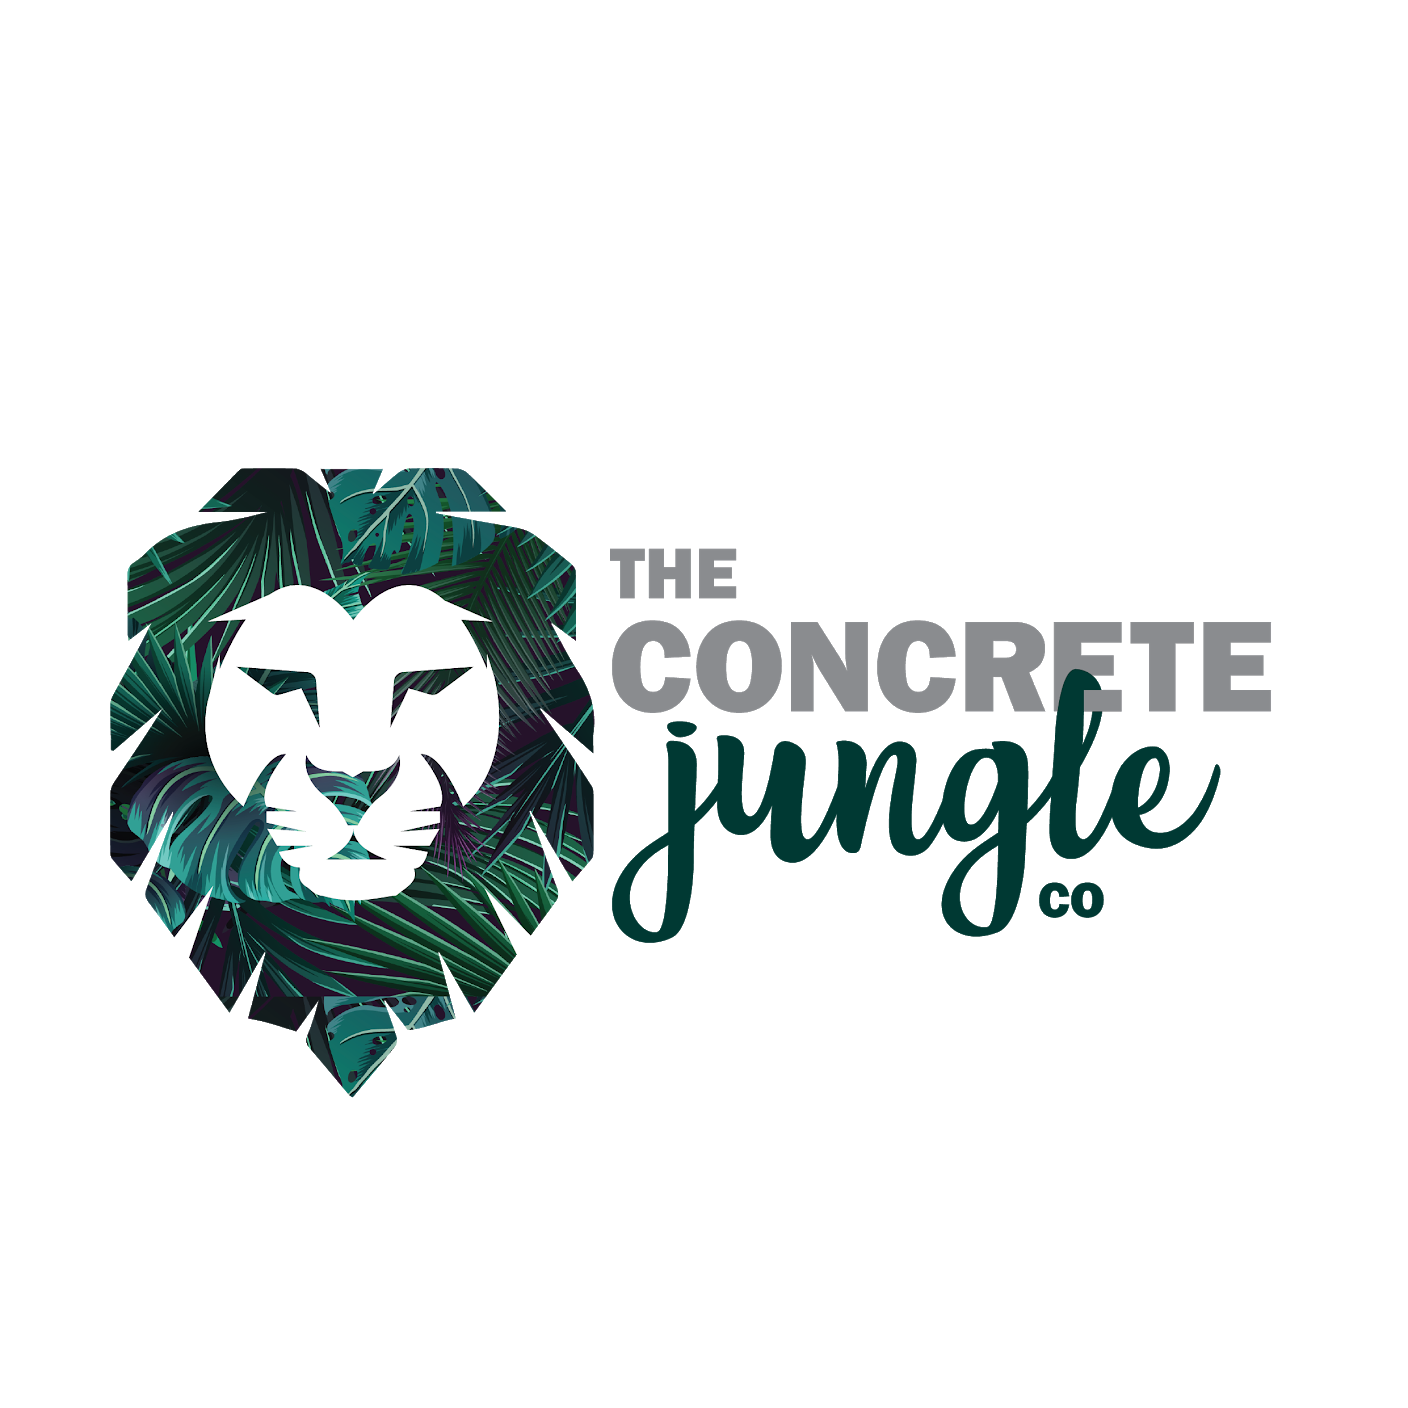 The Concrete Jungle Co